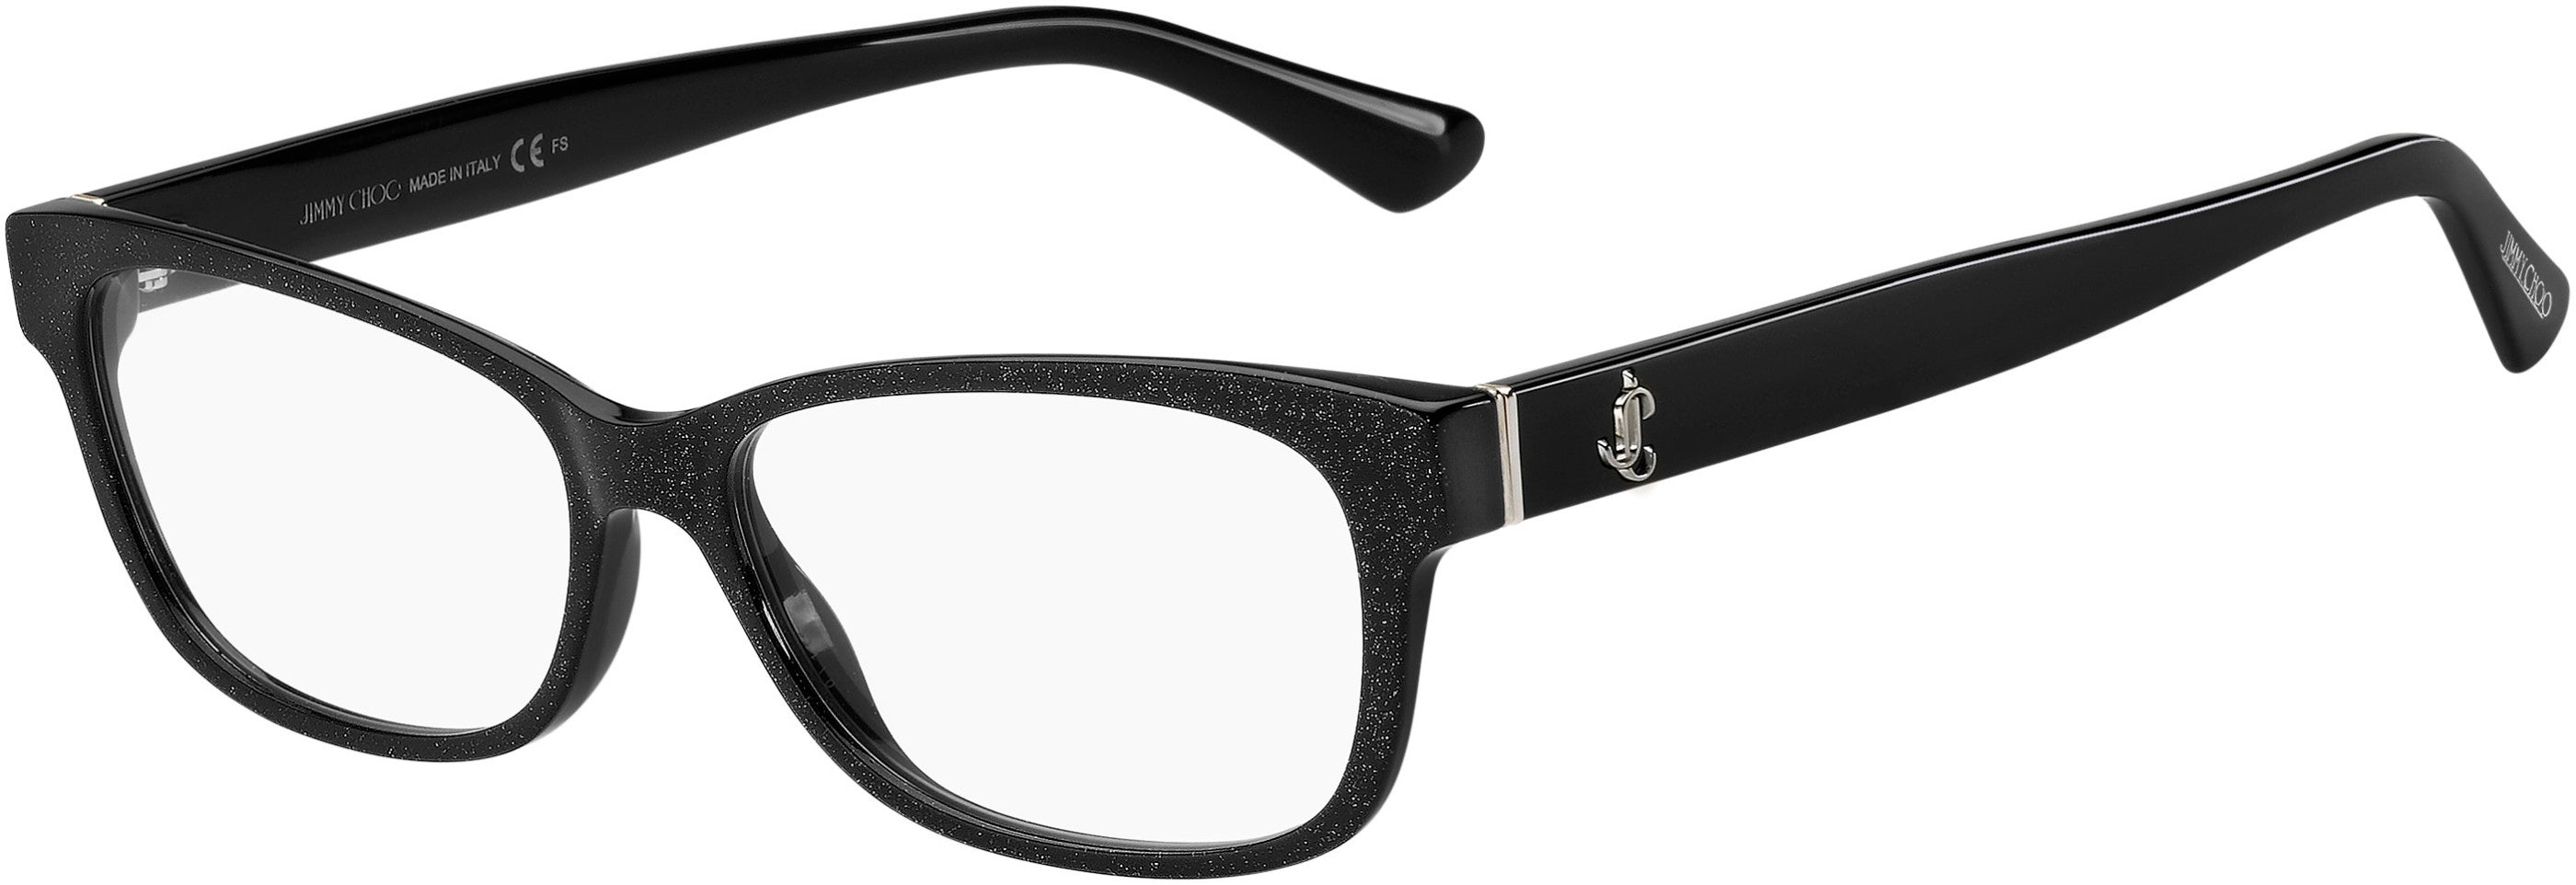  Jimmy Choo 278 Rectangular Eyeglasses 0DXF-0DXF  Glitter Black (00 Demo Lens)